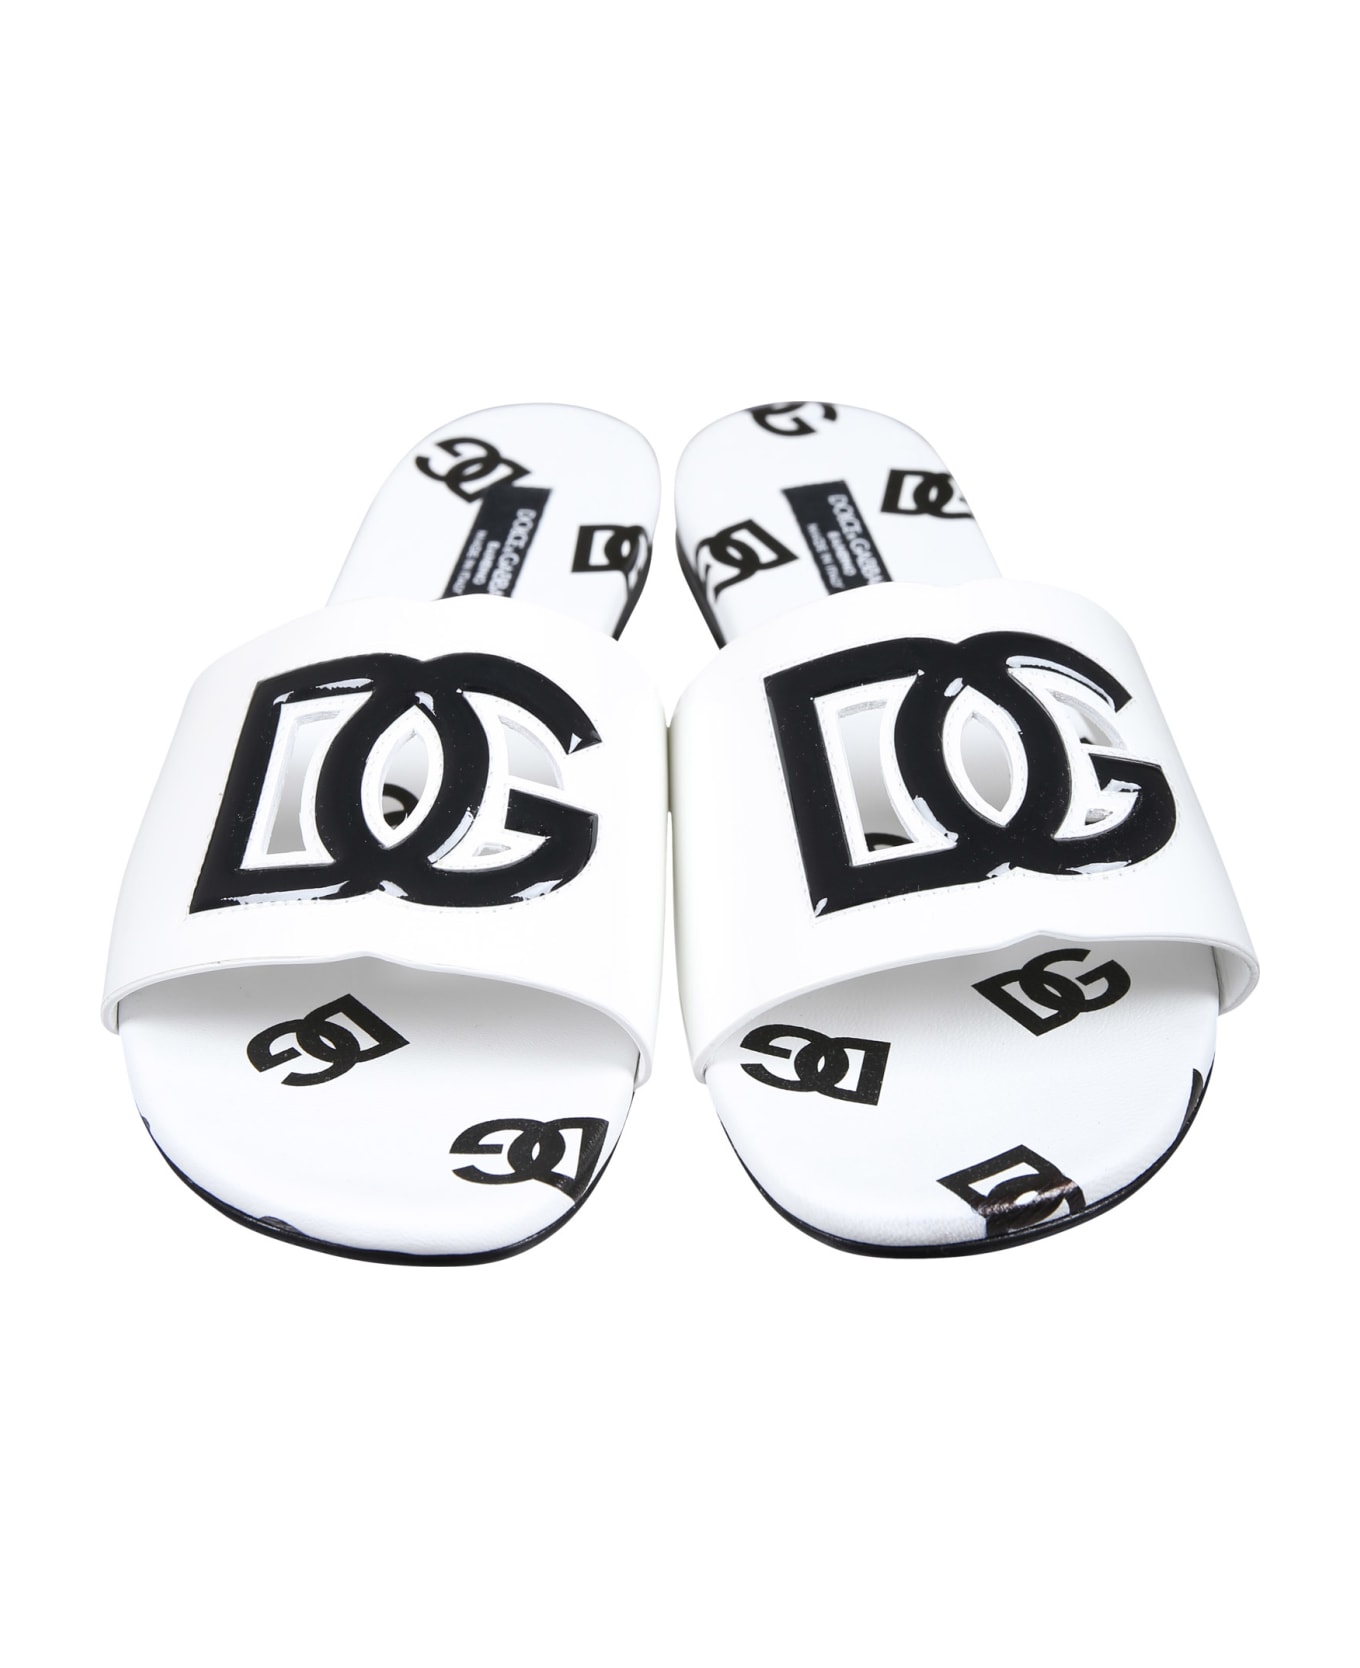 Dolce & Gabbana White Slippers For Girl With Logo - Havan Nero シューズ